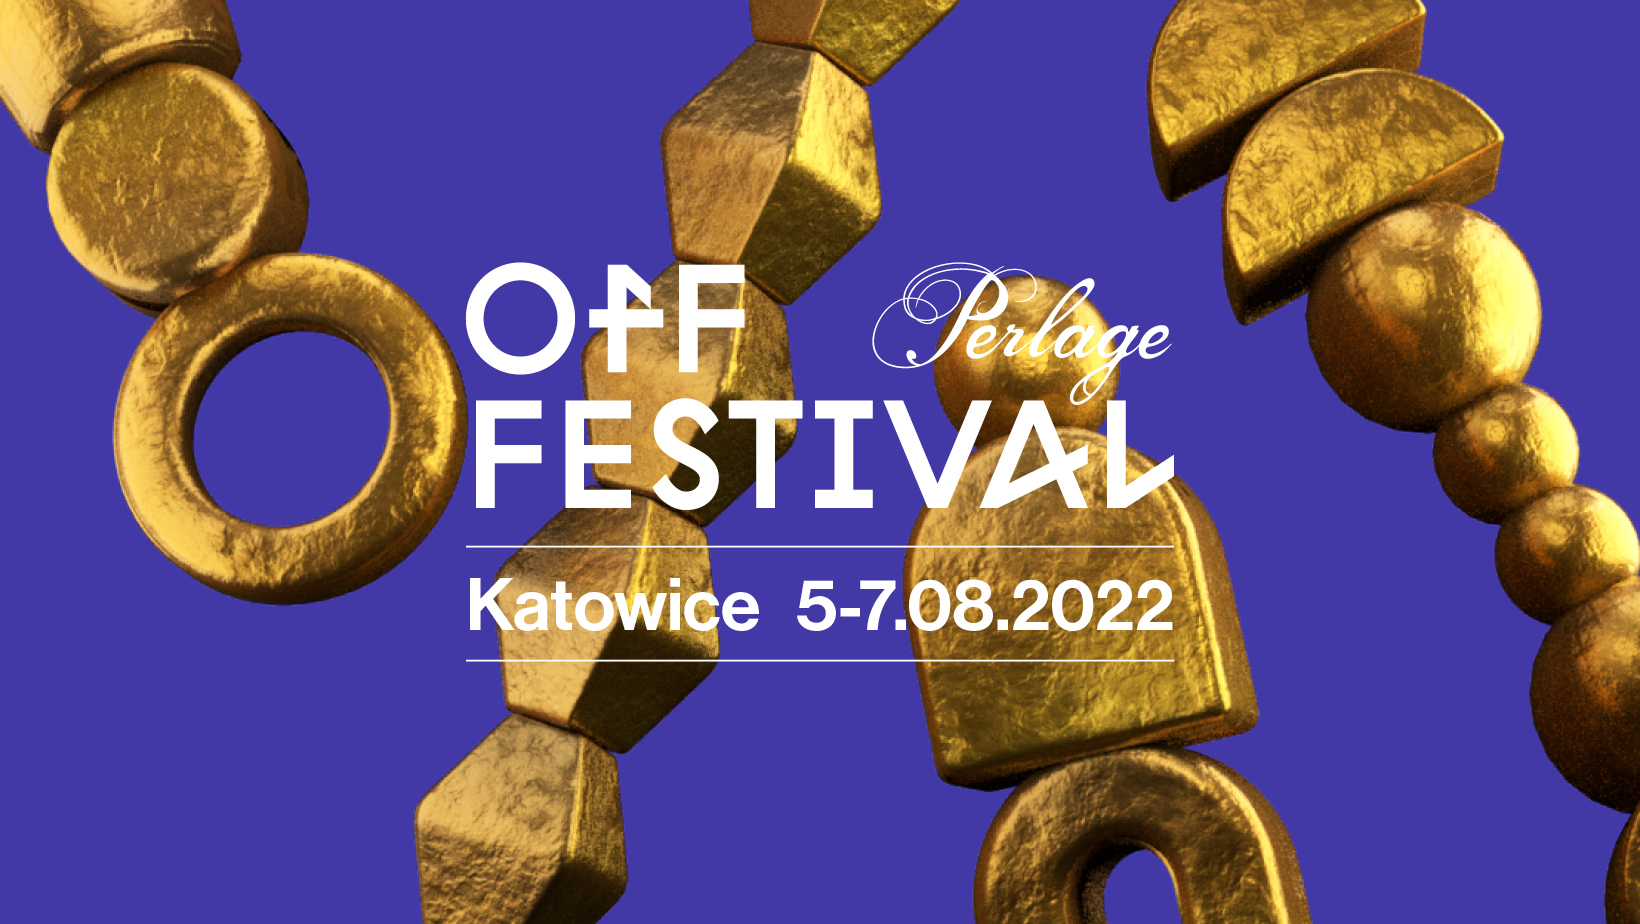 OFF Festiwal odbędzie się 5-7 sierpnia w Dolinie Trzech Stawów w Katowicach